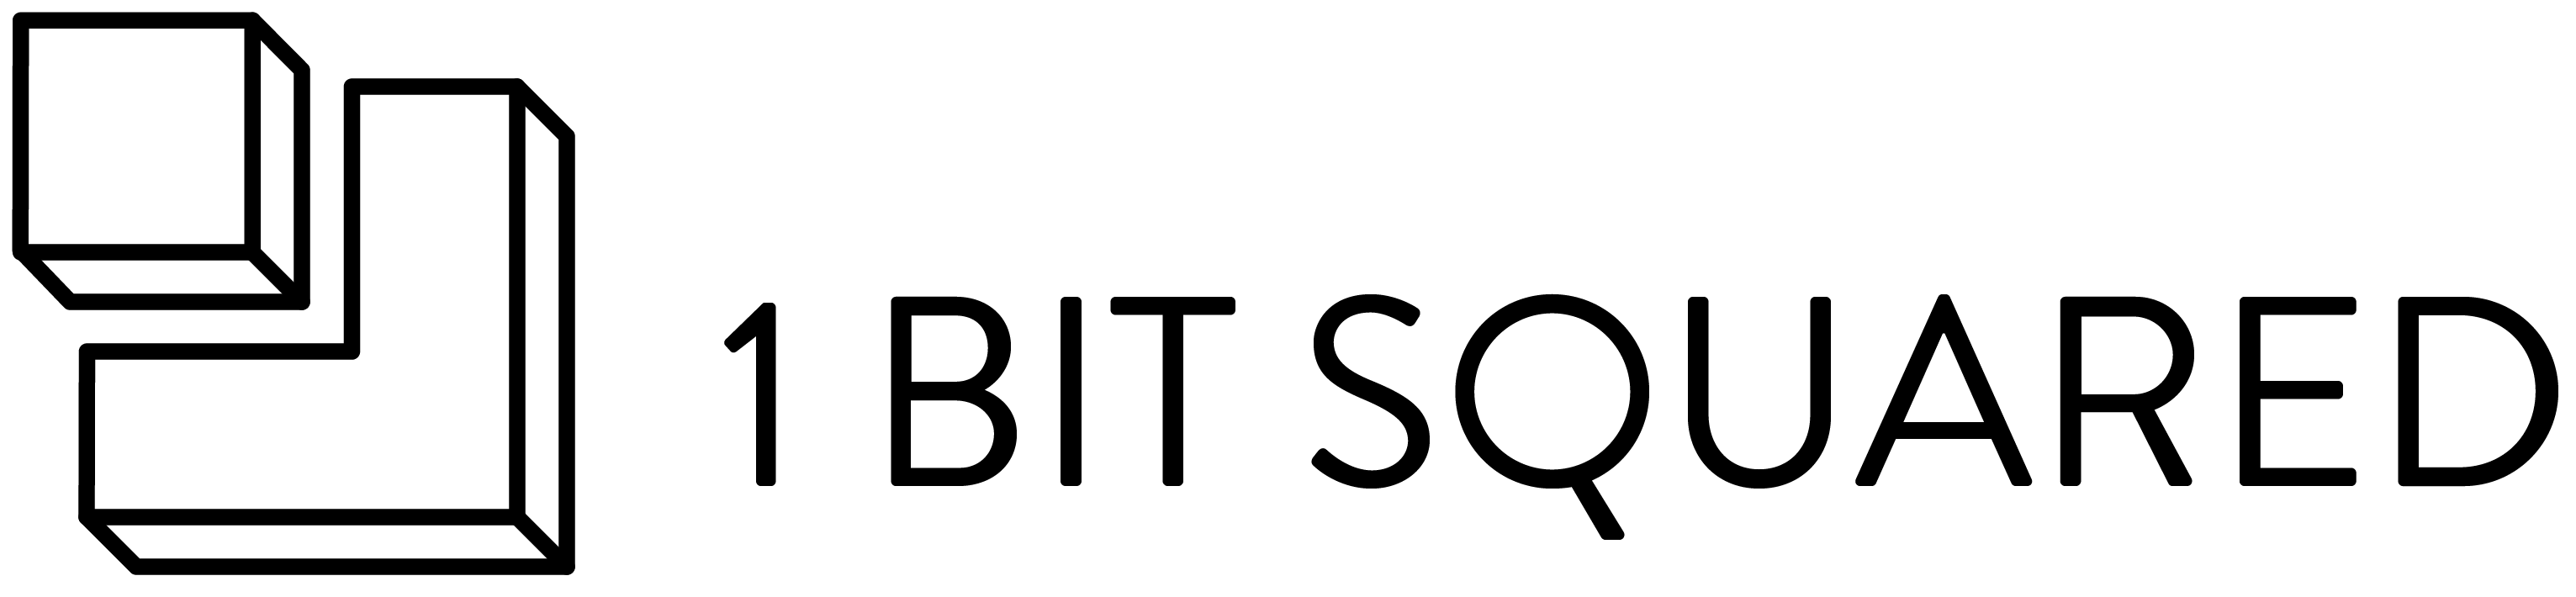 1 Bit Squared logo